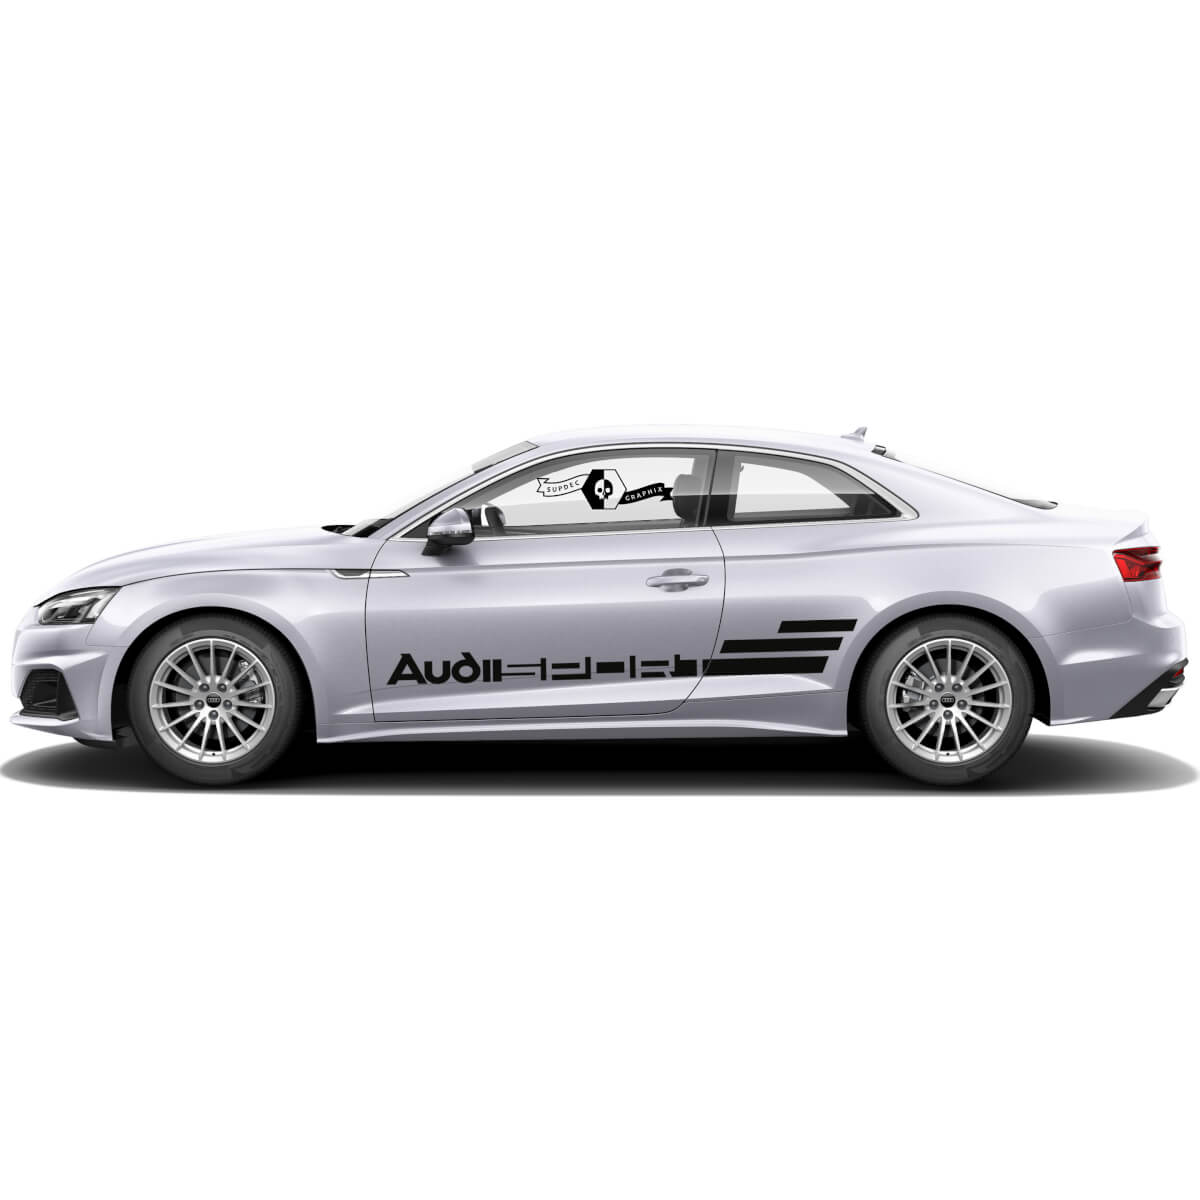 2 Audi Sport A5 car styling vinile auto gonna laterale adesivo per auto Racing stripe WRAP decalcomania per Audi
